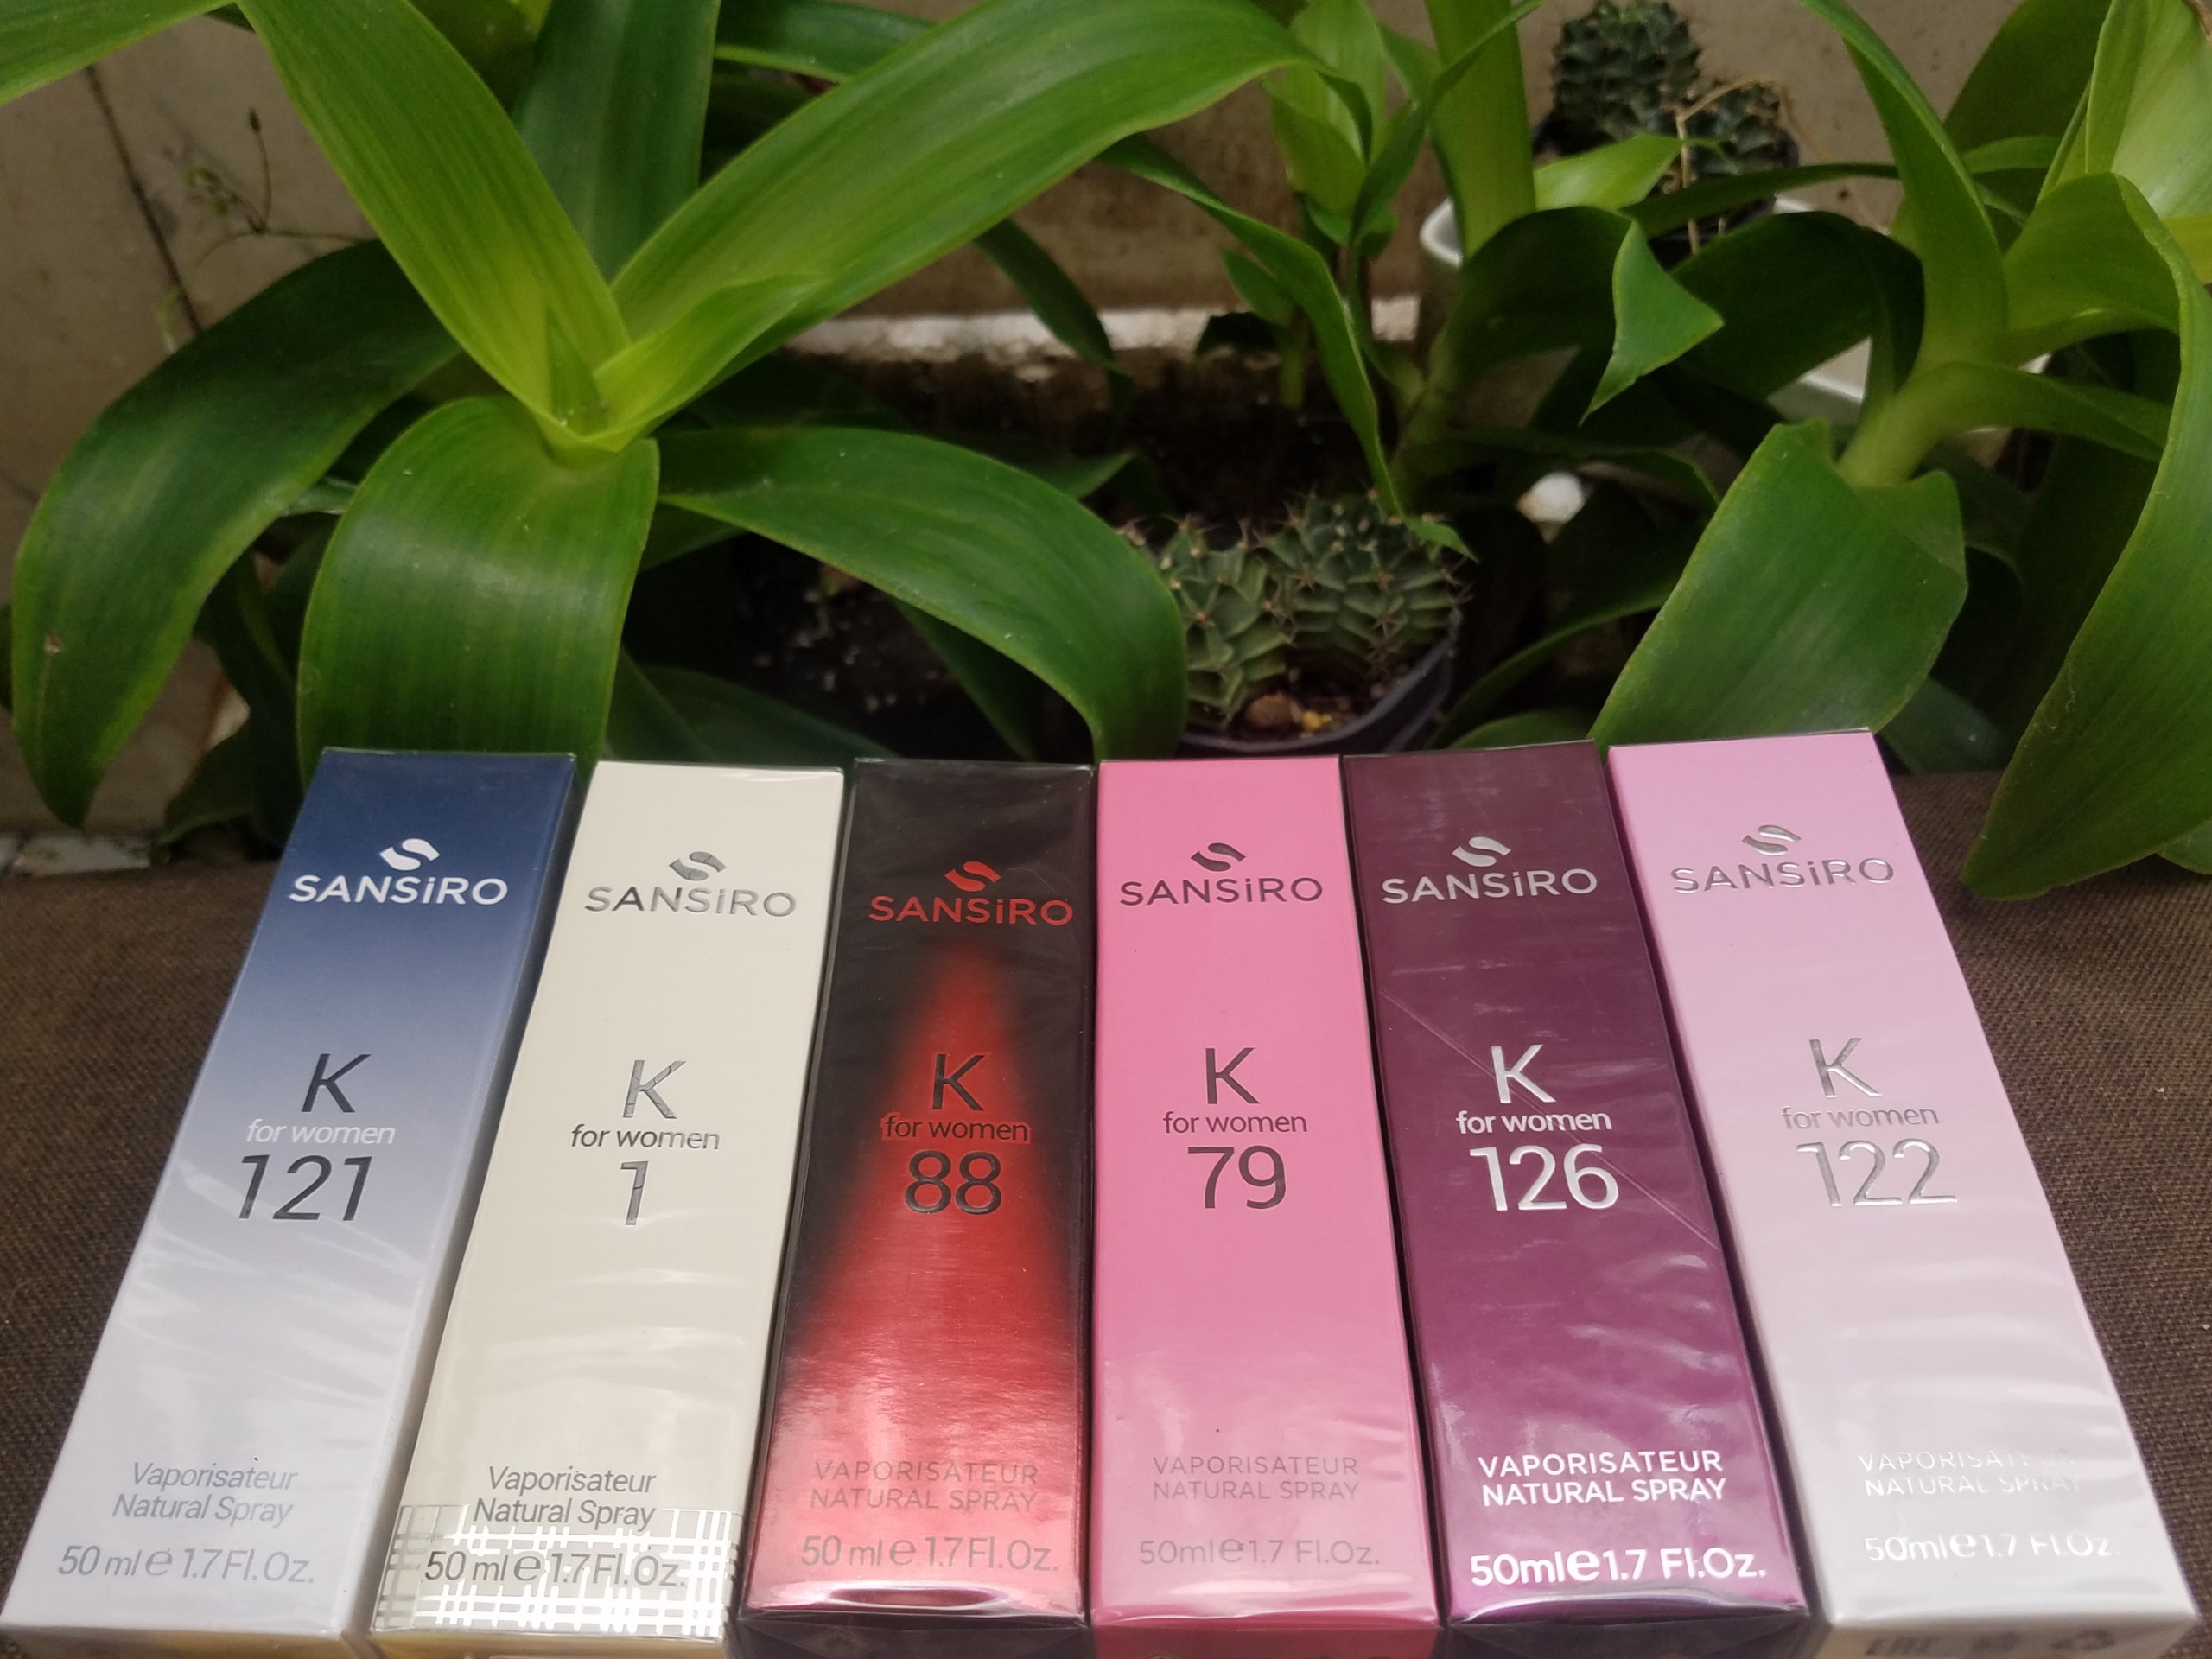 K1 - Nước hoa Sansiro 50ml cho nữ